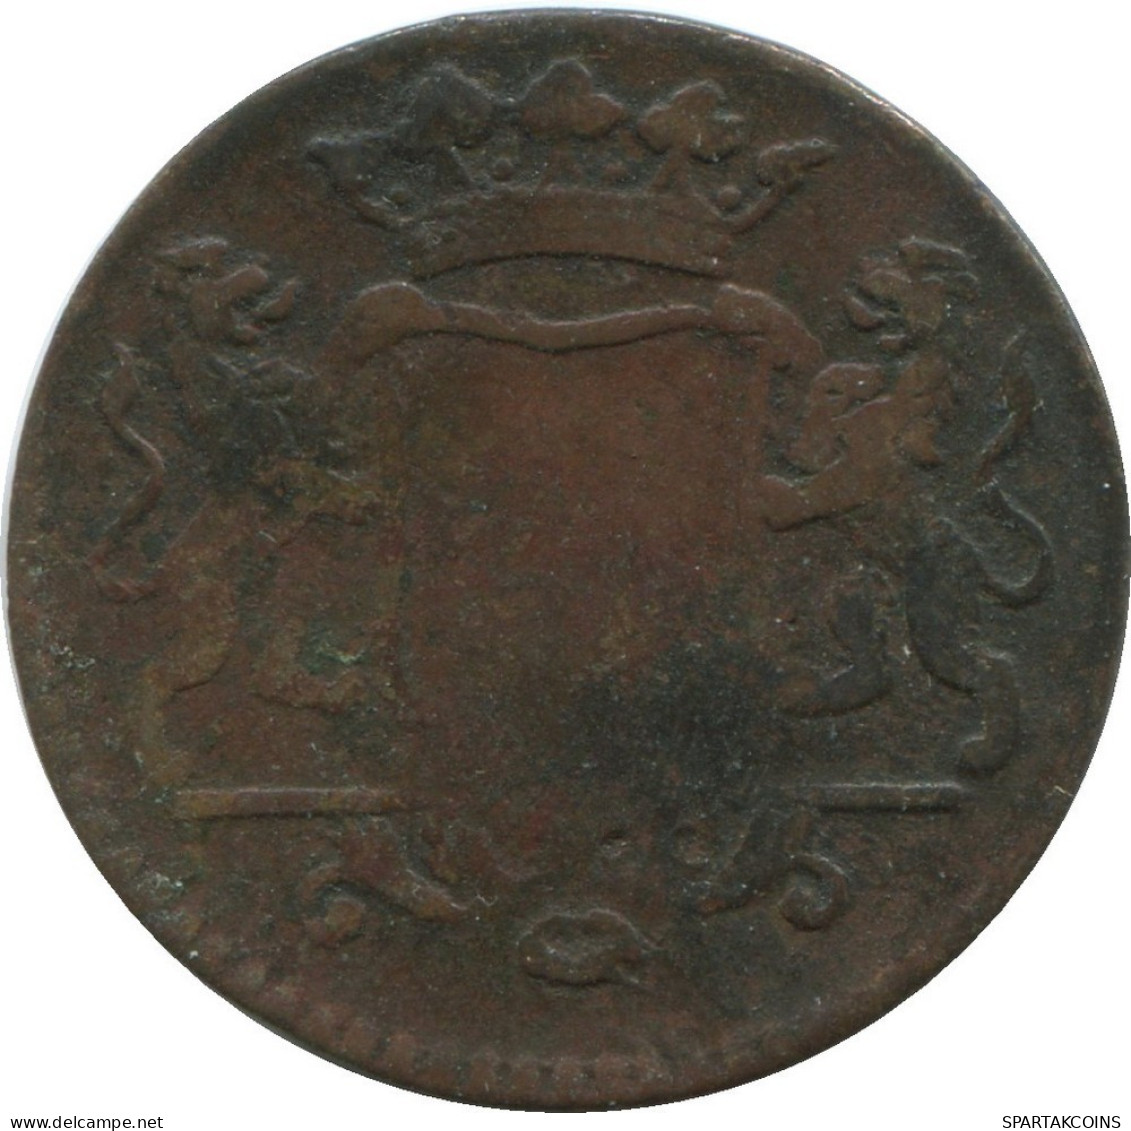 1755 UTRECHT VOC DUIT NIEDERLANDE OSTINDIEN NY COLONIAL PENNY #VOC1065.8.D.A - Dutch East Indies